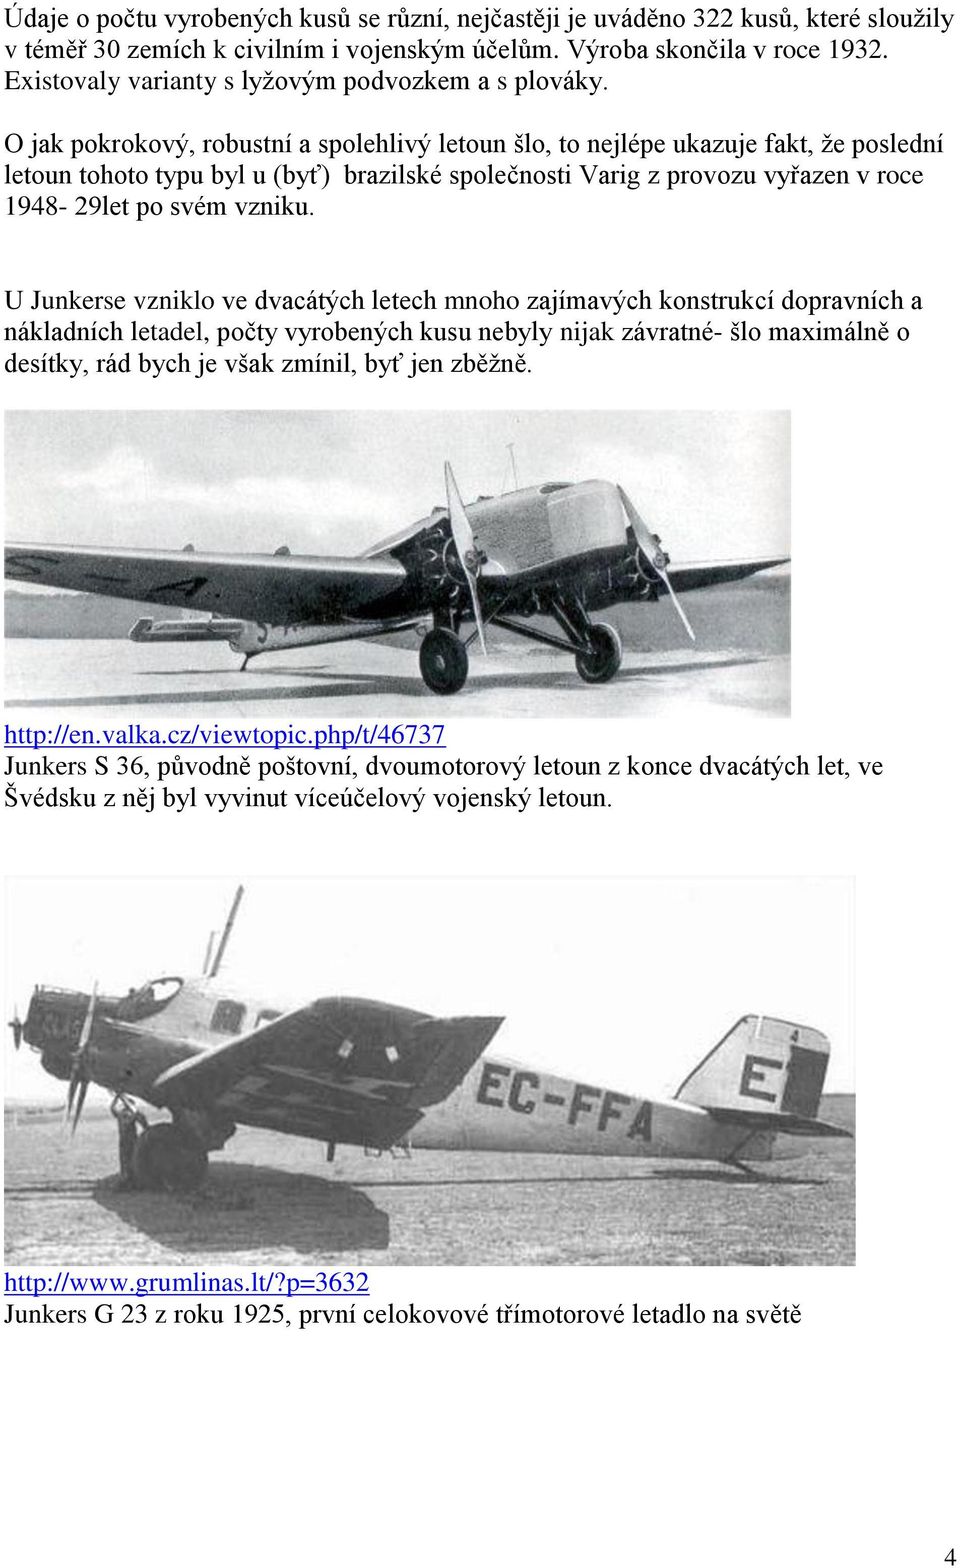 O jak pokrokový, robustní a spolehlivý letoun šlo, to nejlépe ukazuje fakt, že poslední letoun tohoto typu byl u (byť) brazilské společnosti Varig z provozu vyřazen v roce 1948-29let po svém vzniku.